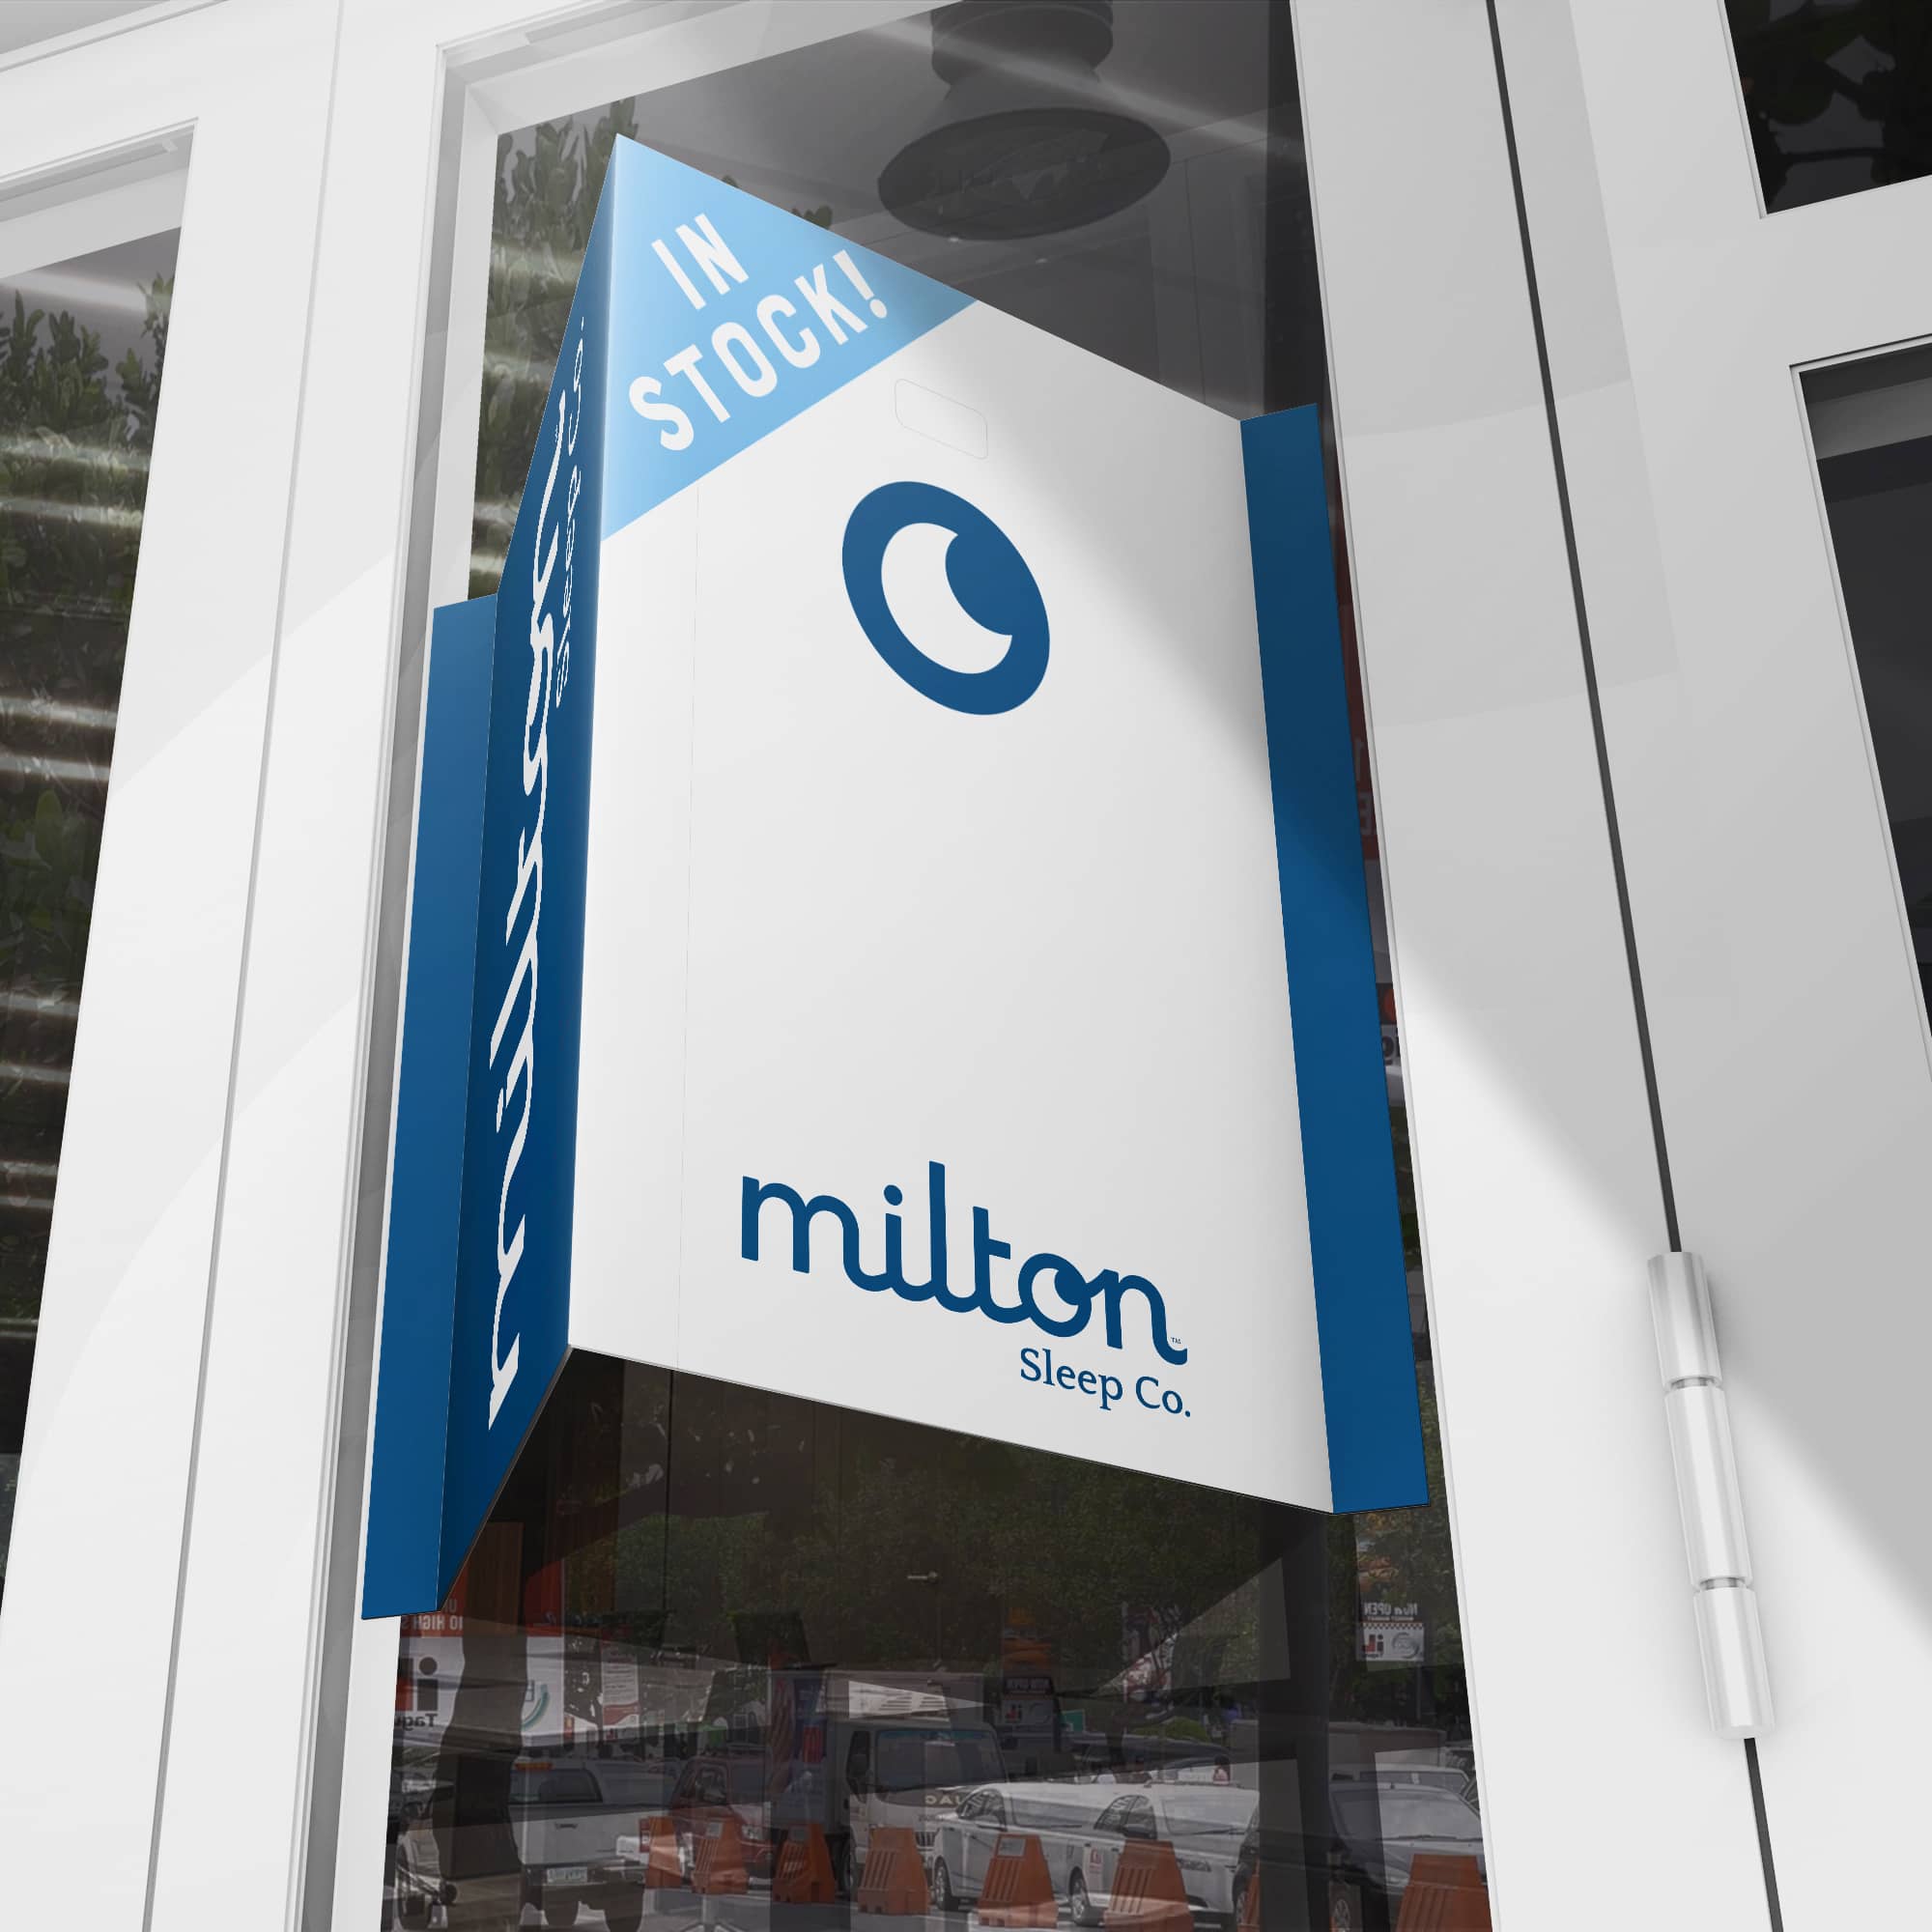 Milton Retail sign: In stock